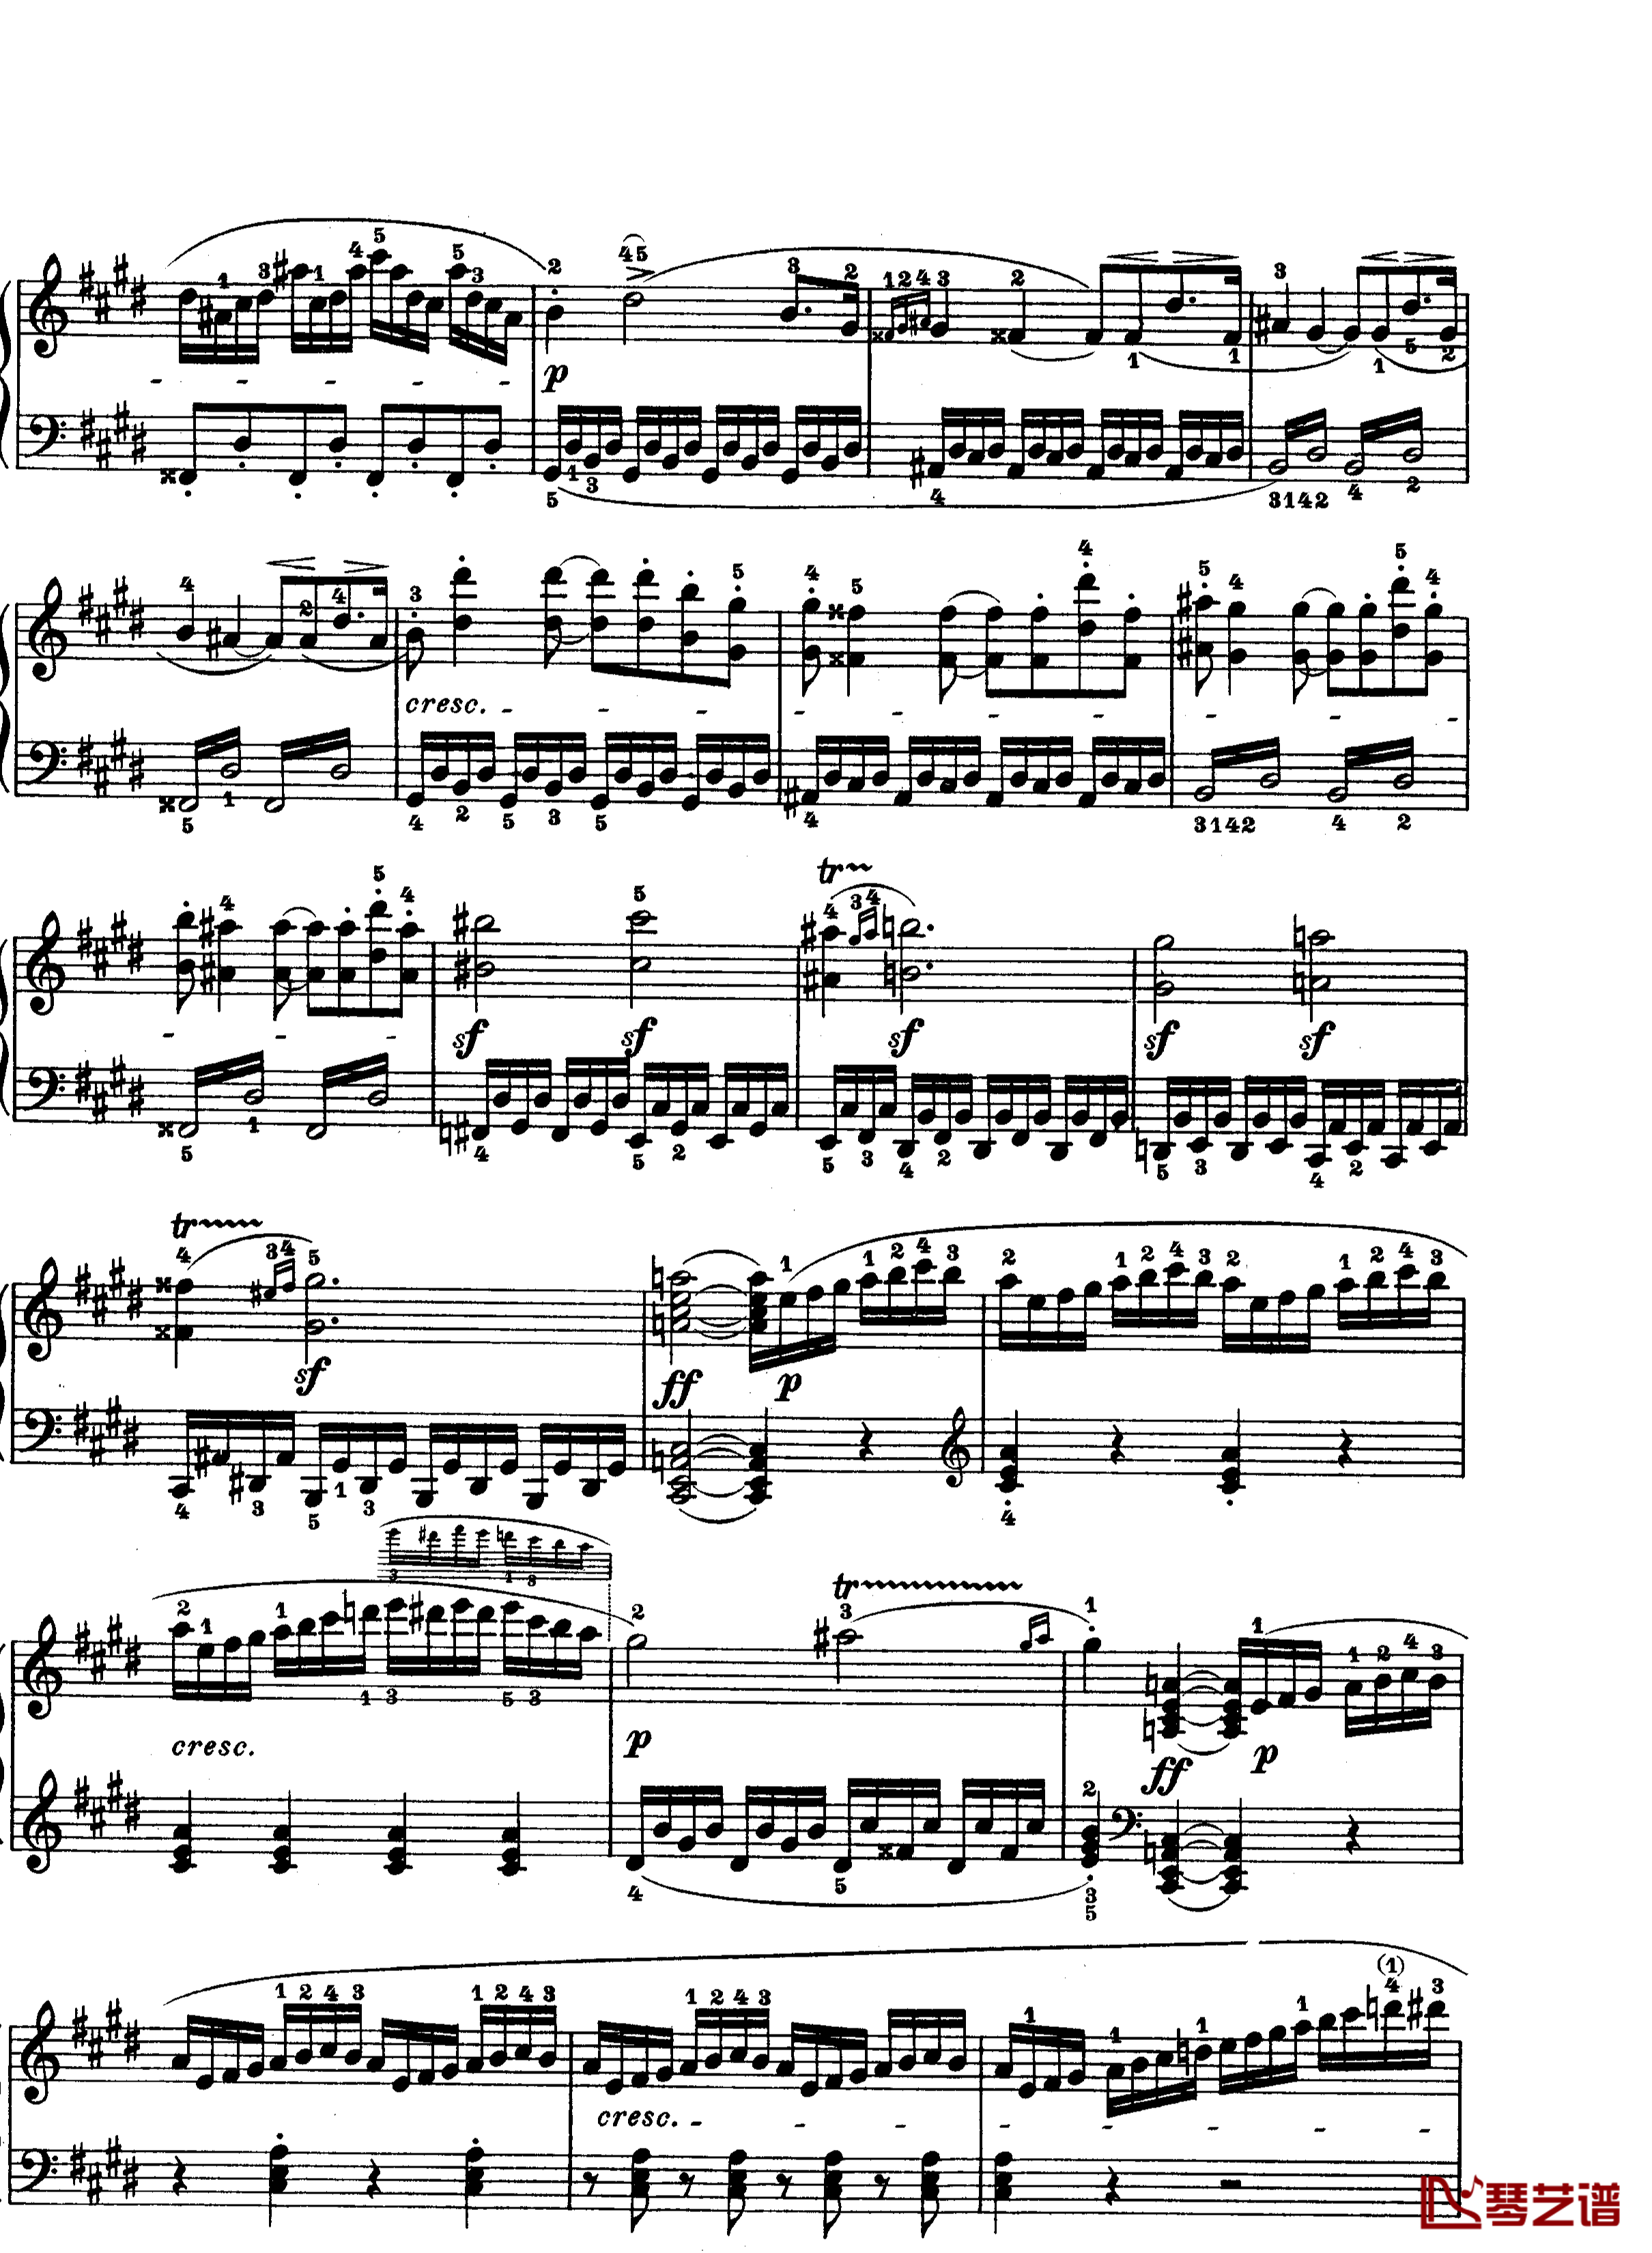 月光曲钢琴谱-第十四钢琴奏鸣曲-Op.27 No.2-贝多芬-beethoven6